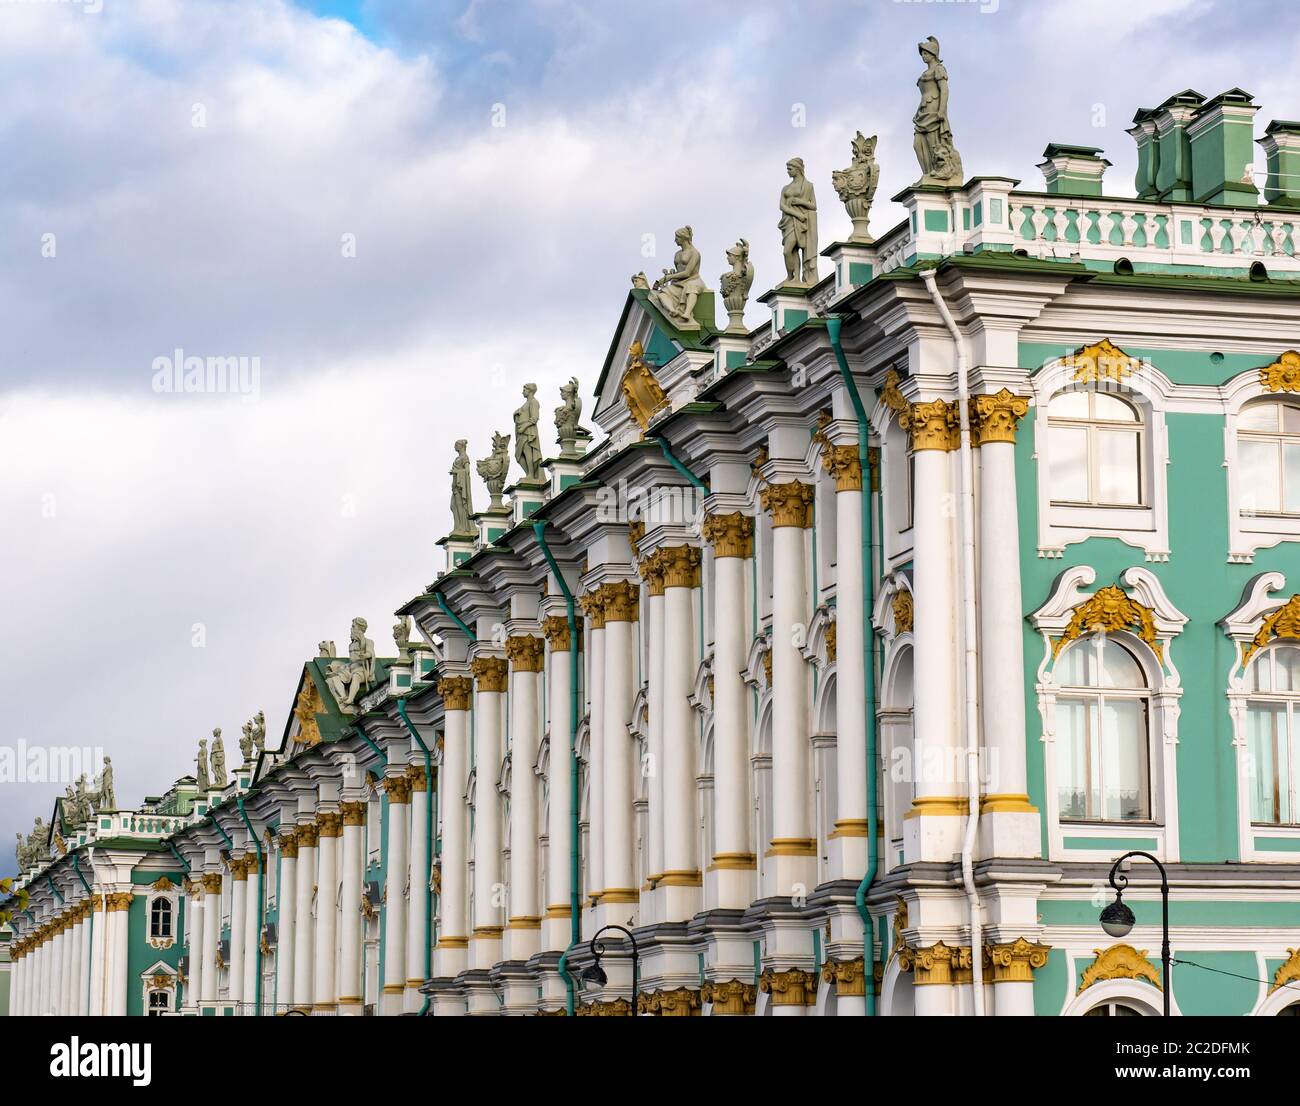 Sculture classiche su tetti di architettura ornata del Palazzo d'Inverno, l'Hermitage, San Pietroburgo, Russia Foto Stock